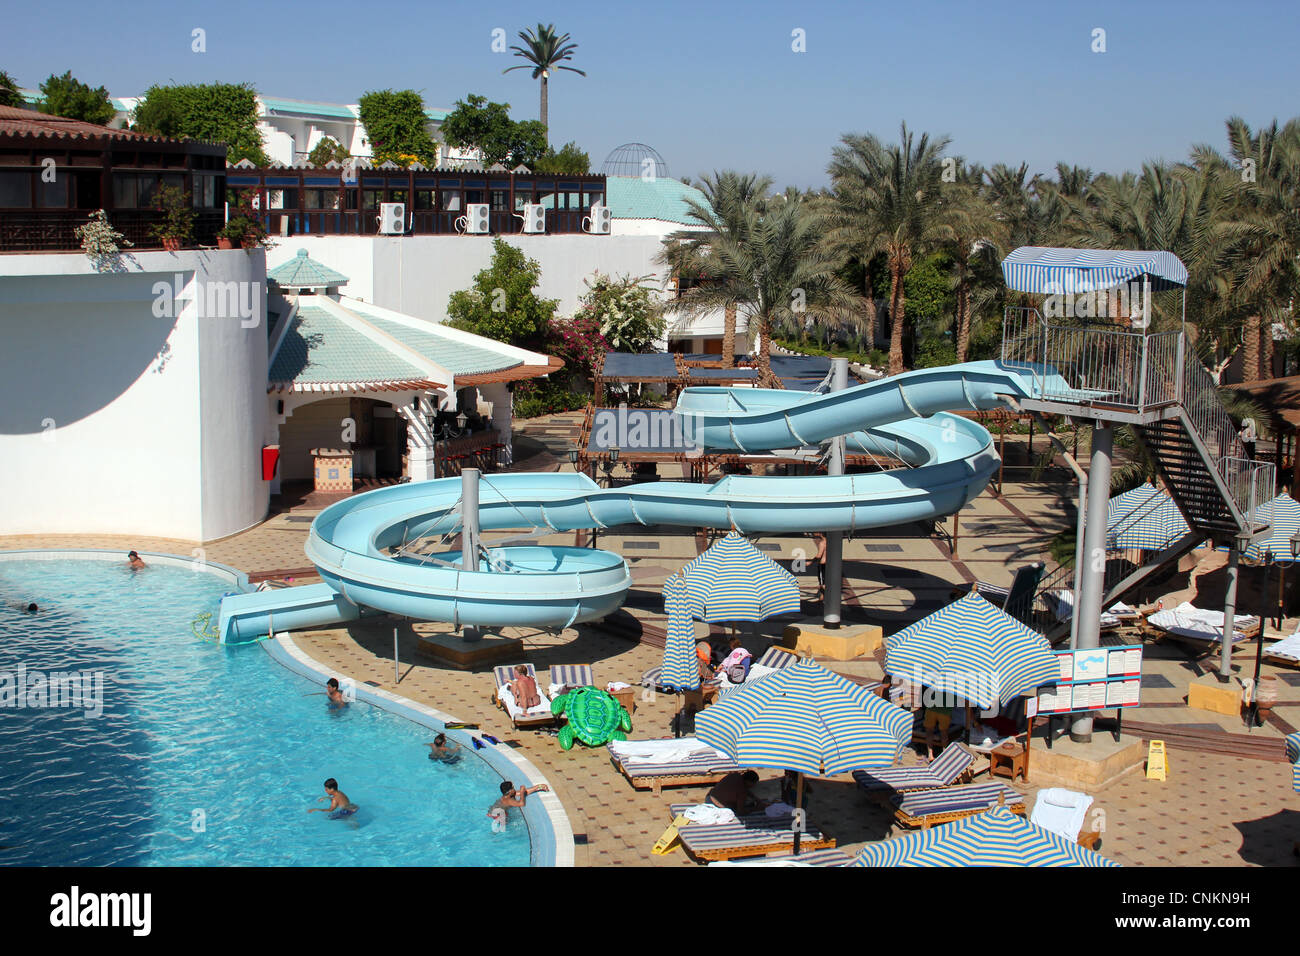 Sultan Gardens Resort in Sharm El Sheikh, Egypt, north Africa. Stock Photo